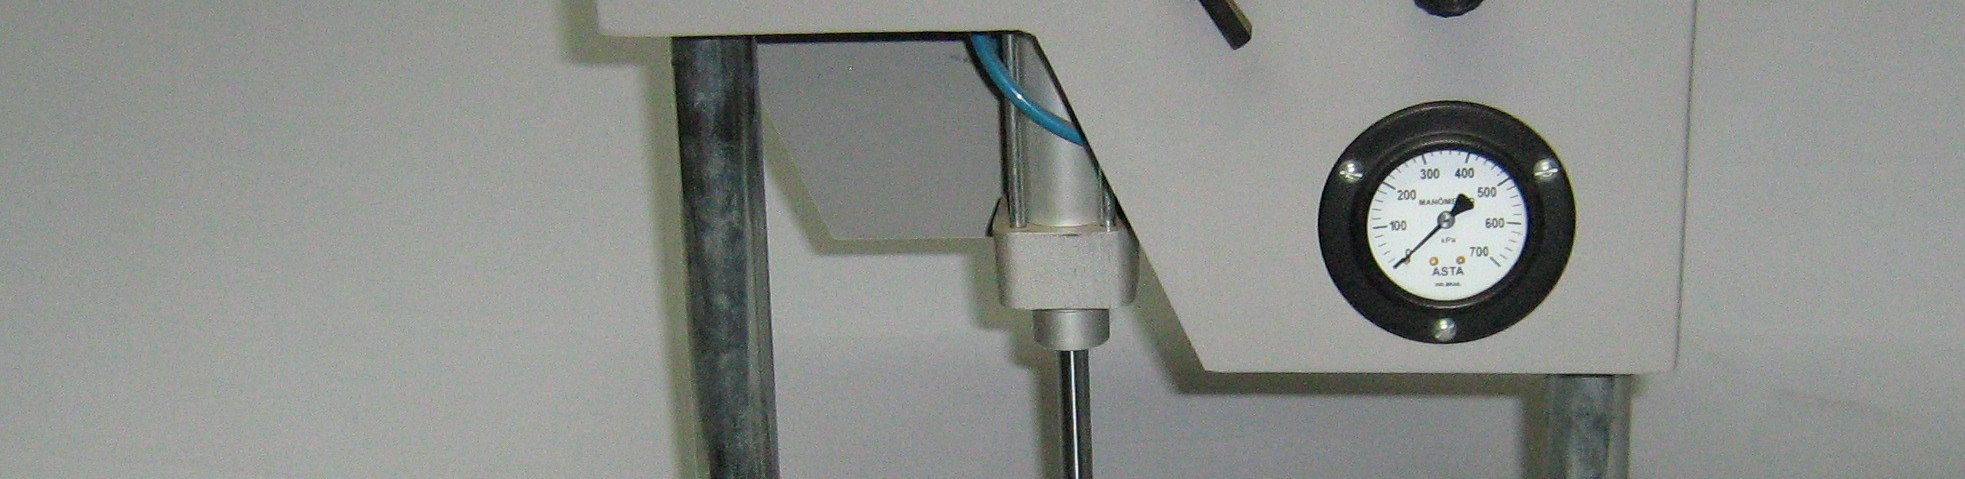 asfáltico a frio com emulsão modificada por polímetros ASTM D 3910 Standard Practices for Design, Testing, and